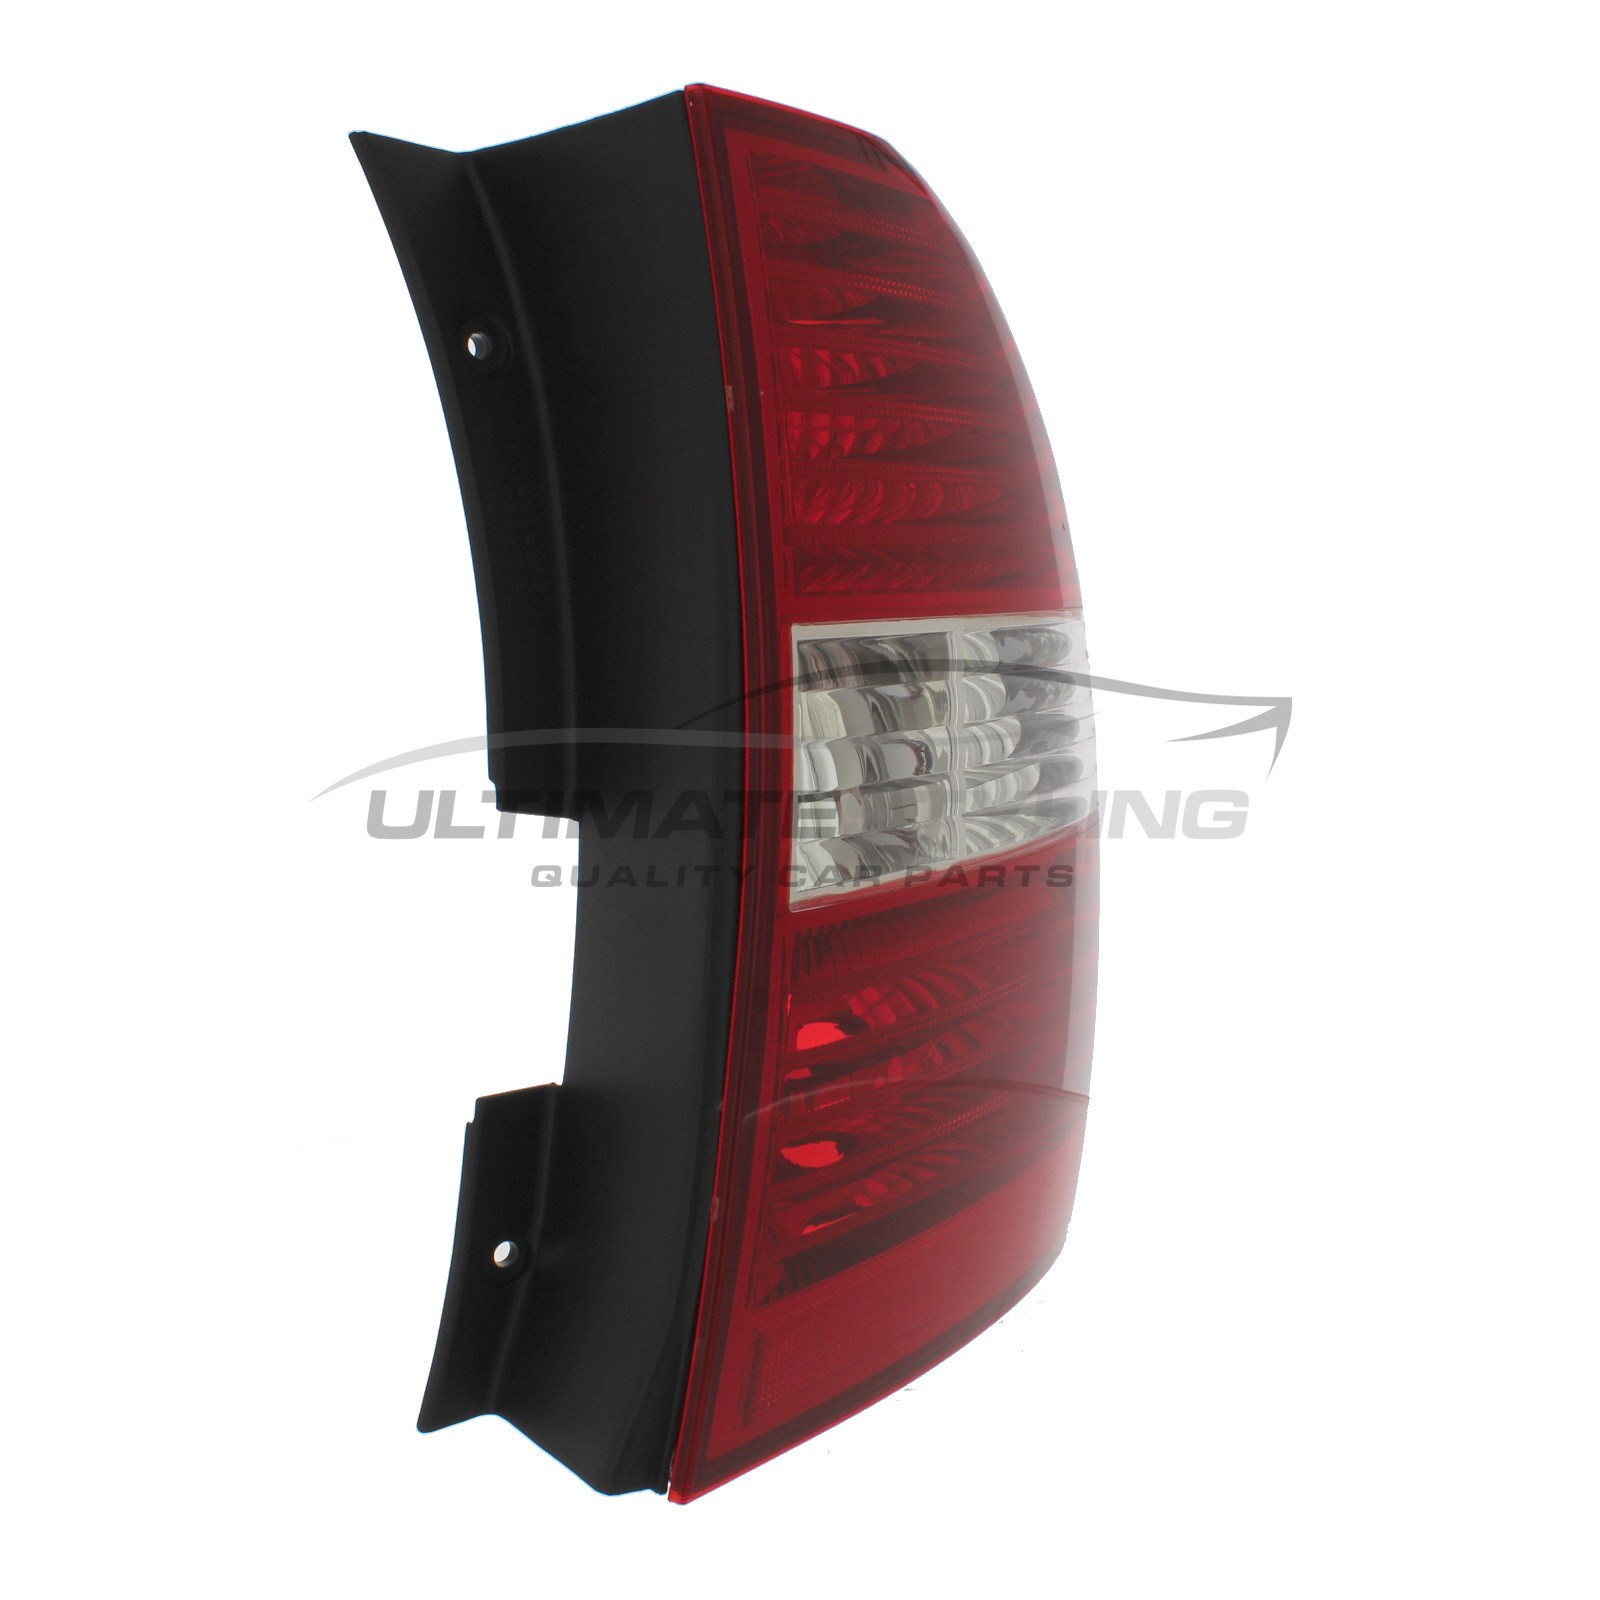 Kia Sportage Rear Light / Tail Light - Drivers Side (RH), Rear